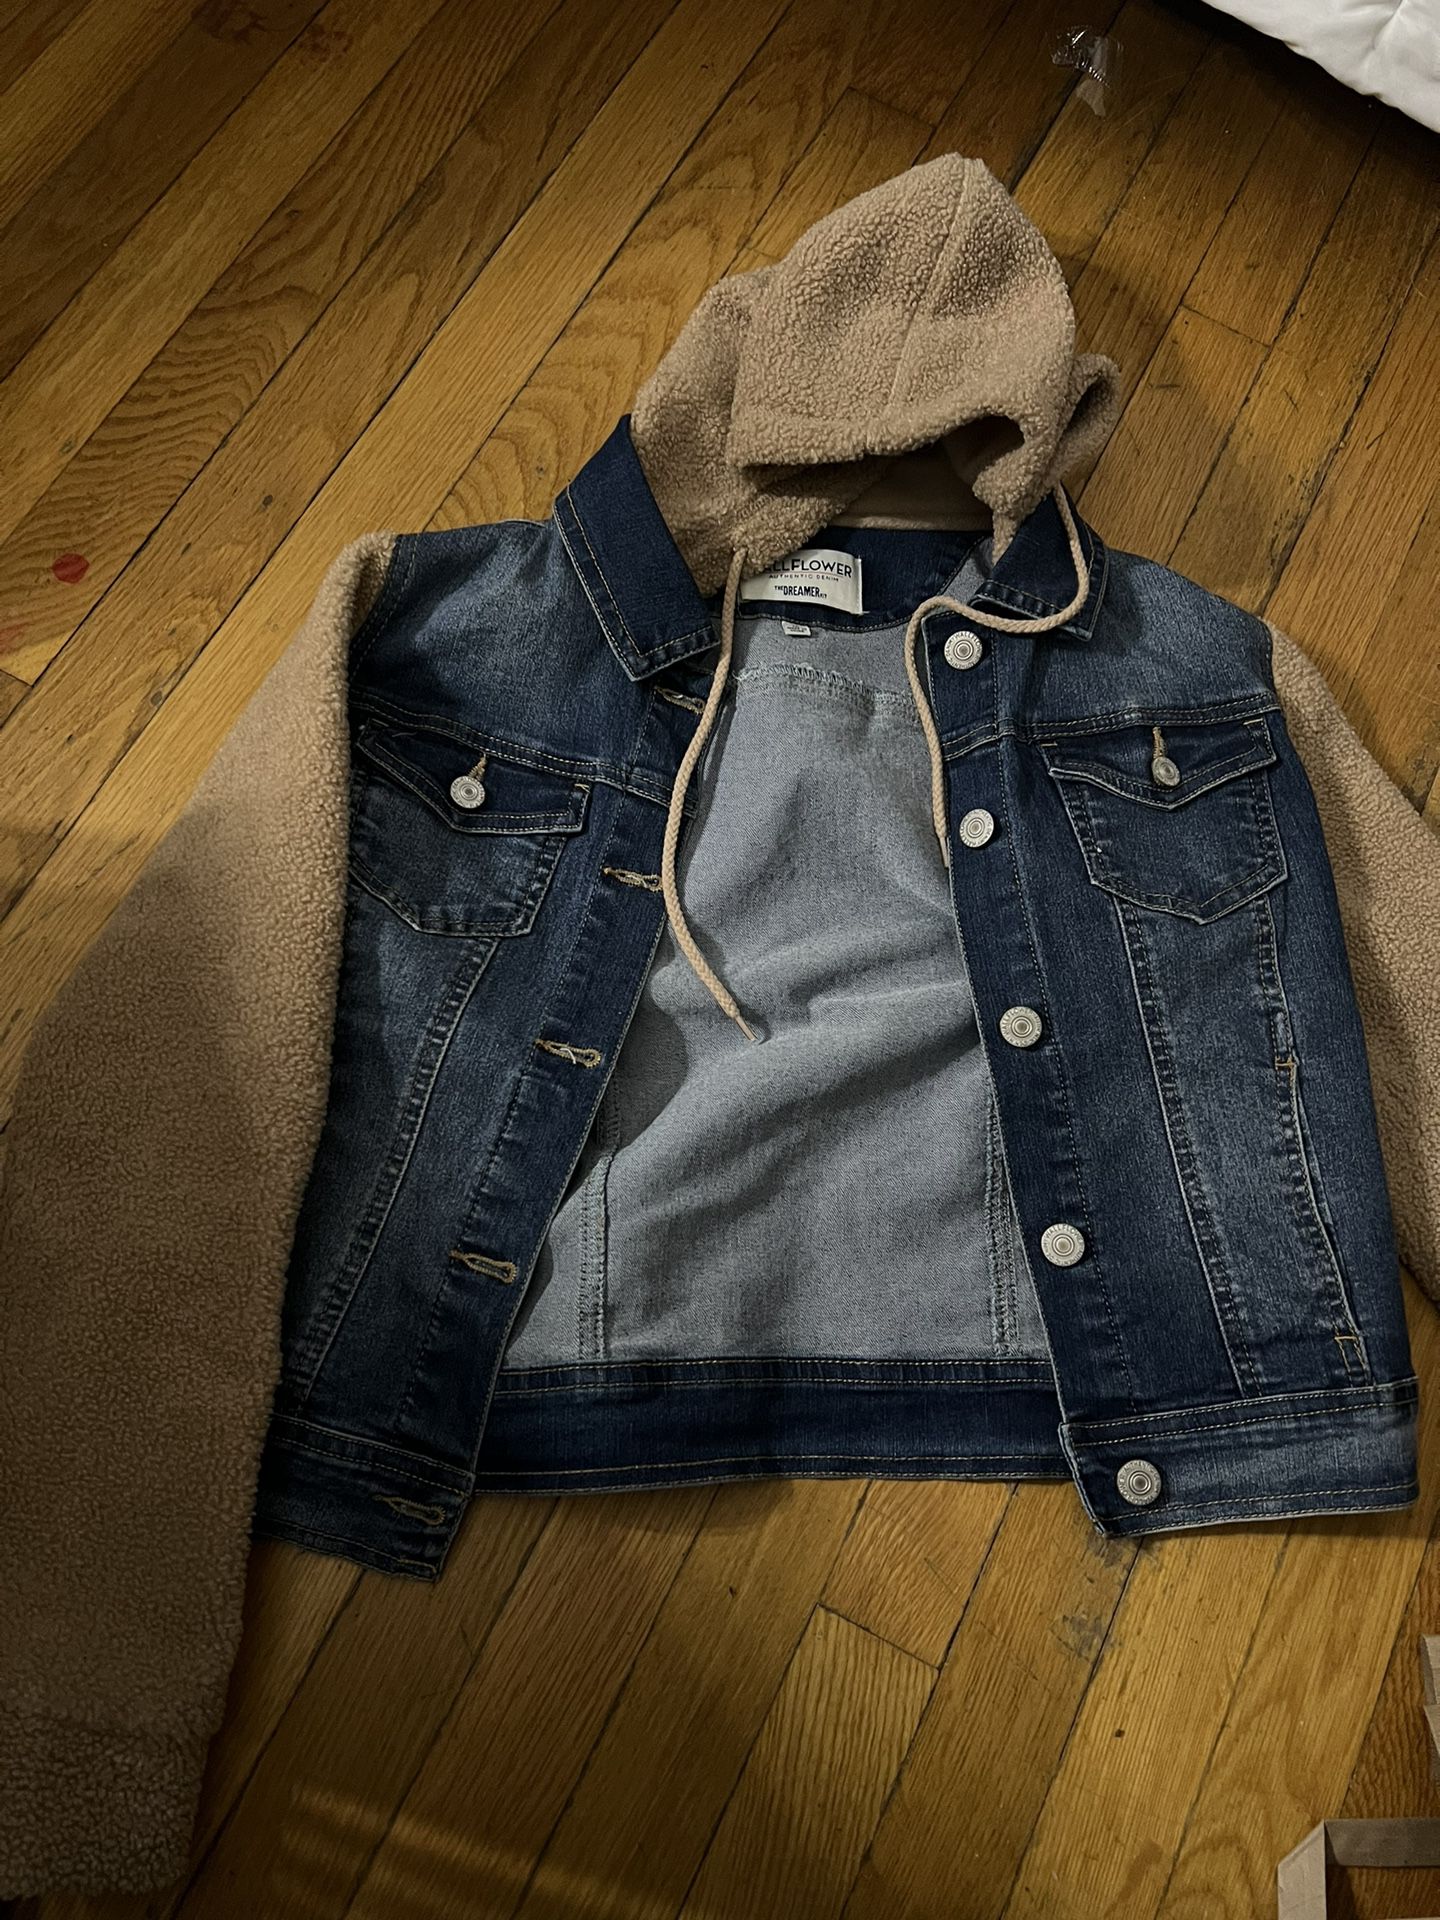 Jean/Sherpa Jacket 